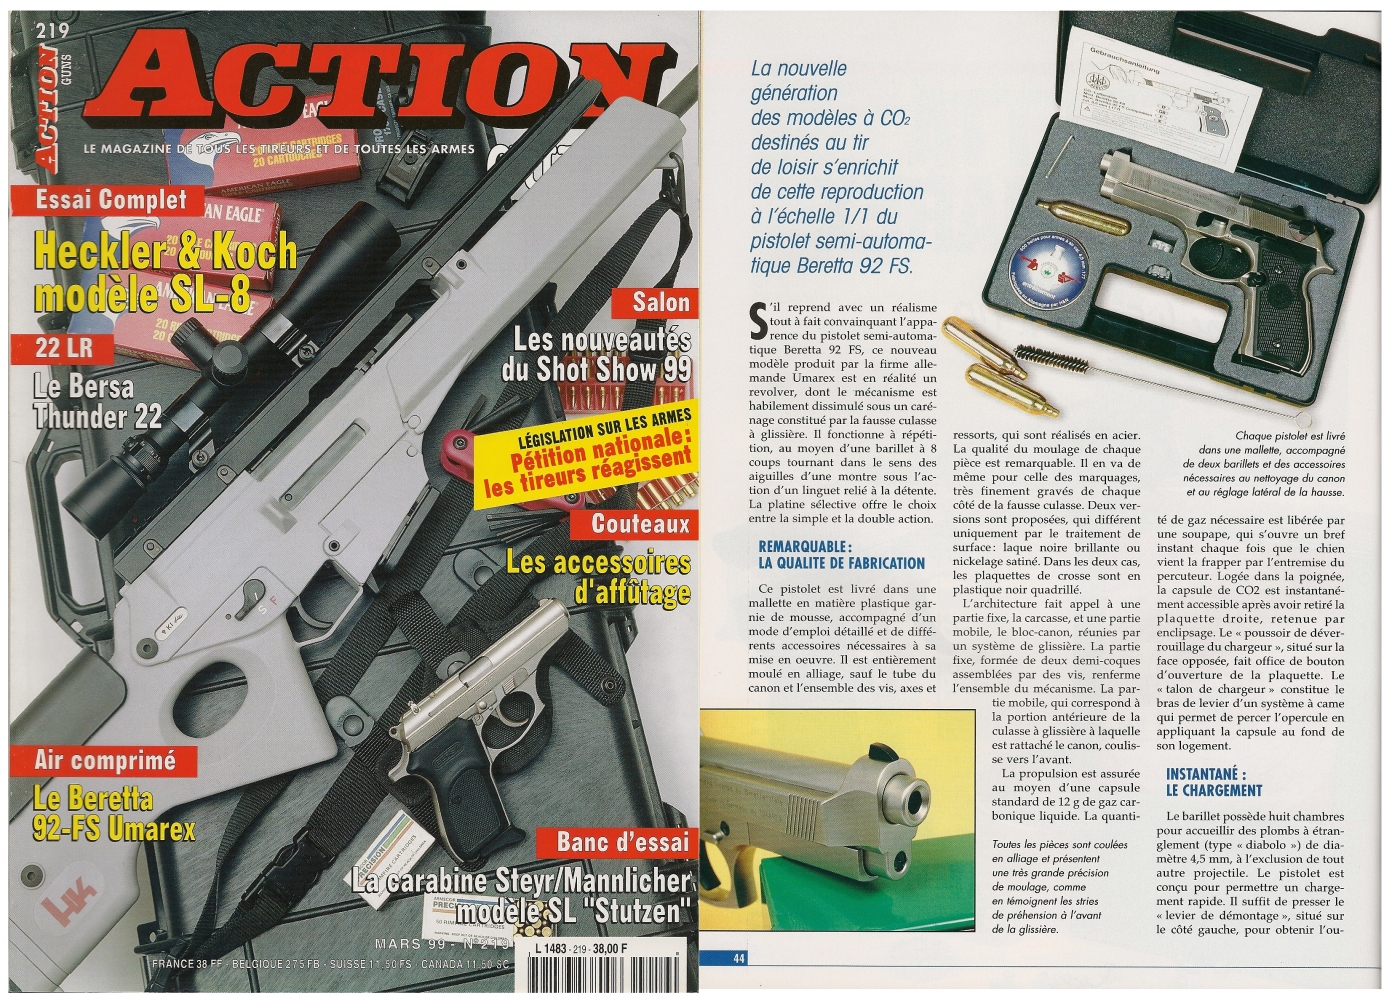 Le banc d’essai du pistolet Beretta 92 FS à CO2 a été publié sur 4 pages dans le magazine Action Guns n°219 (mars 1999) 